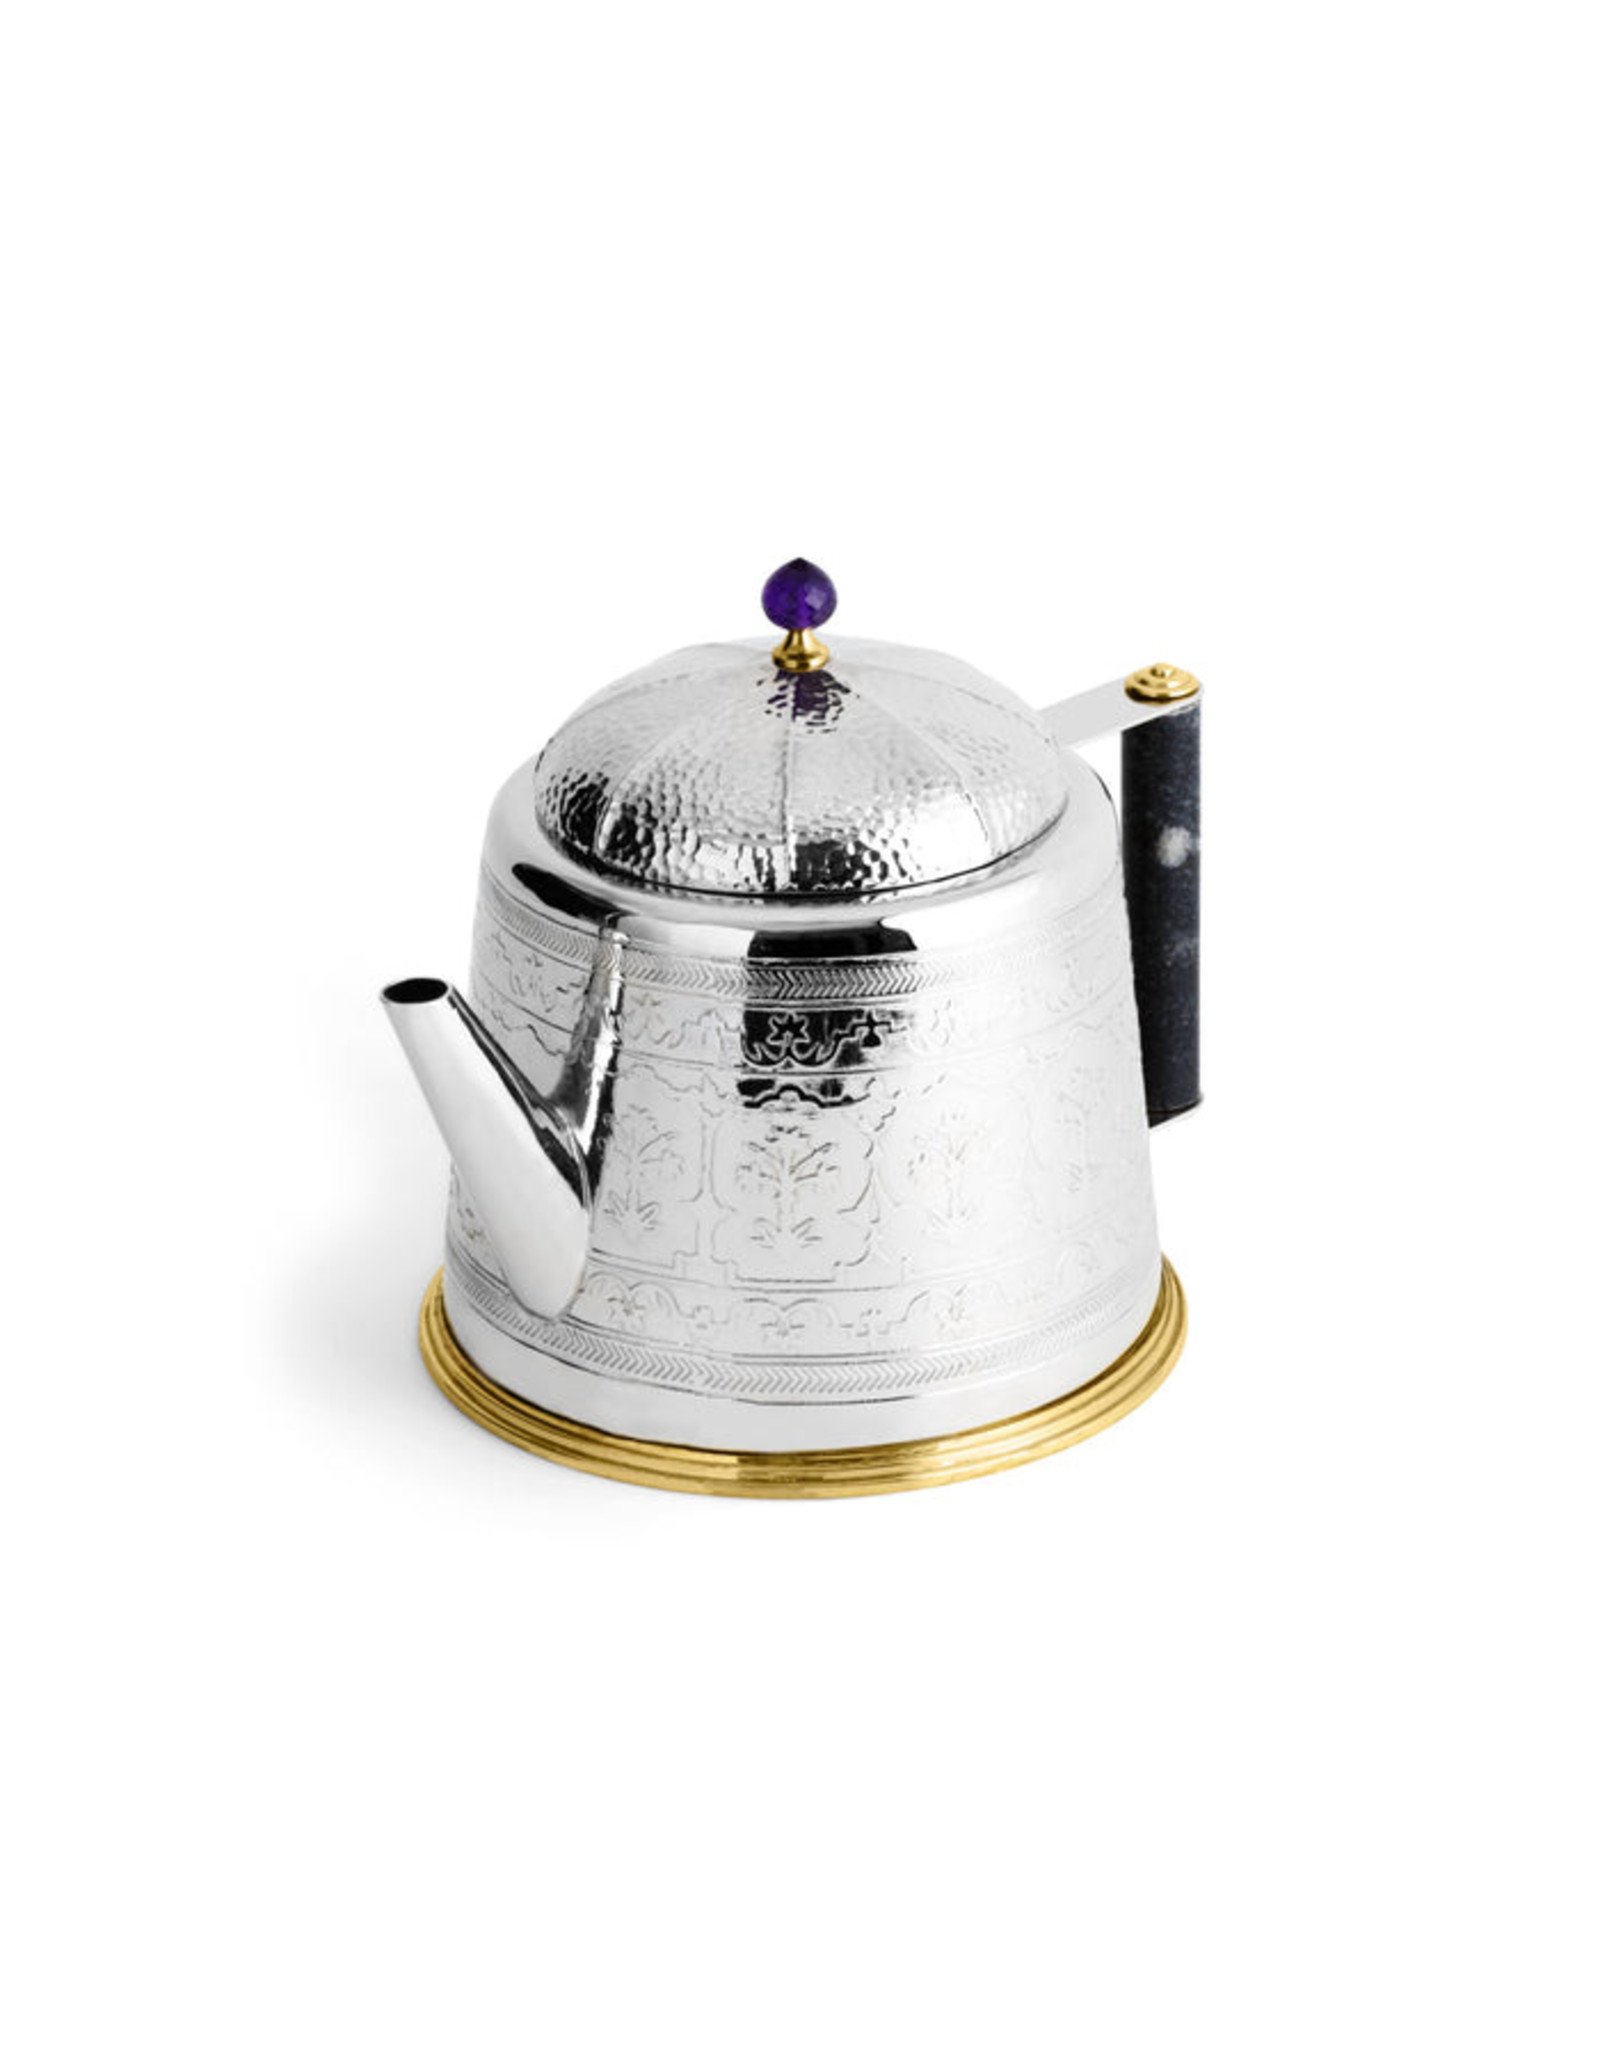 Palace Teapot